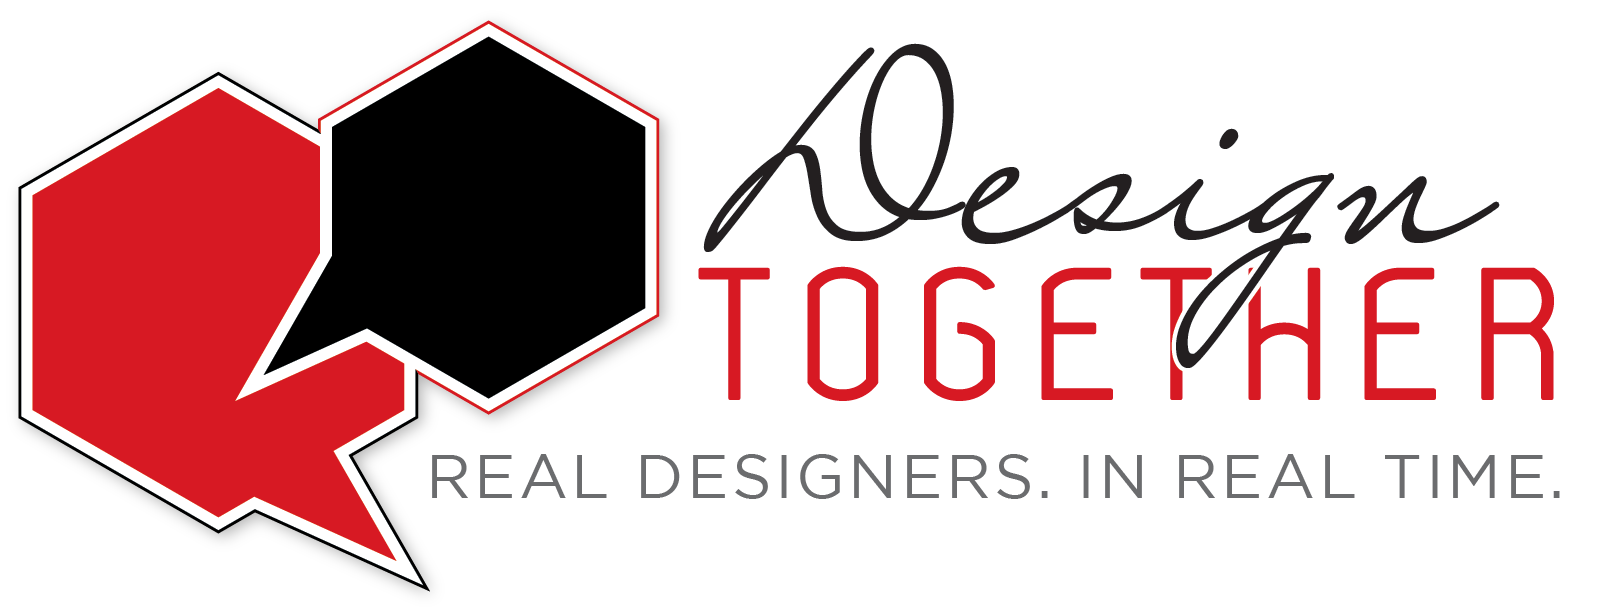 design-together-1-logo-.png